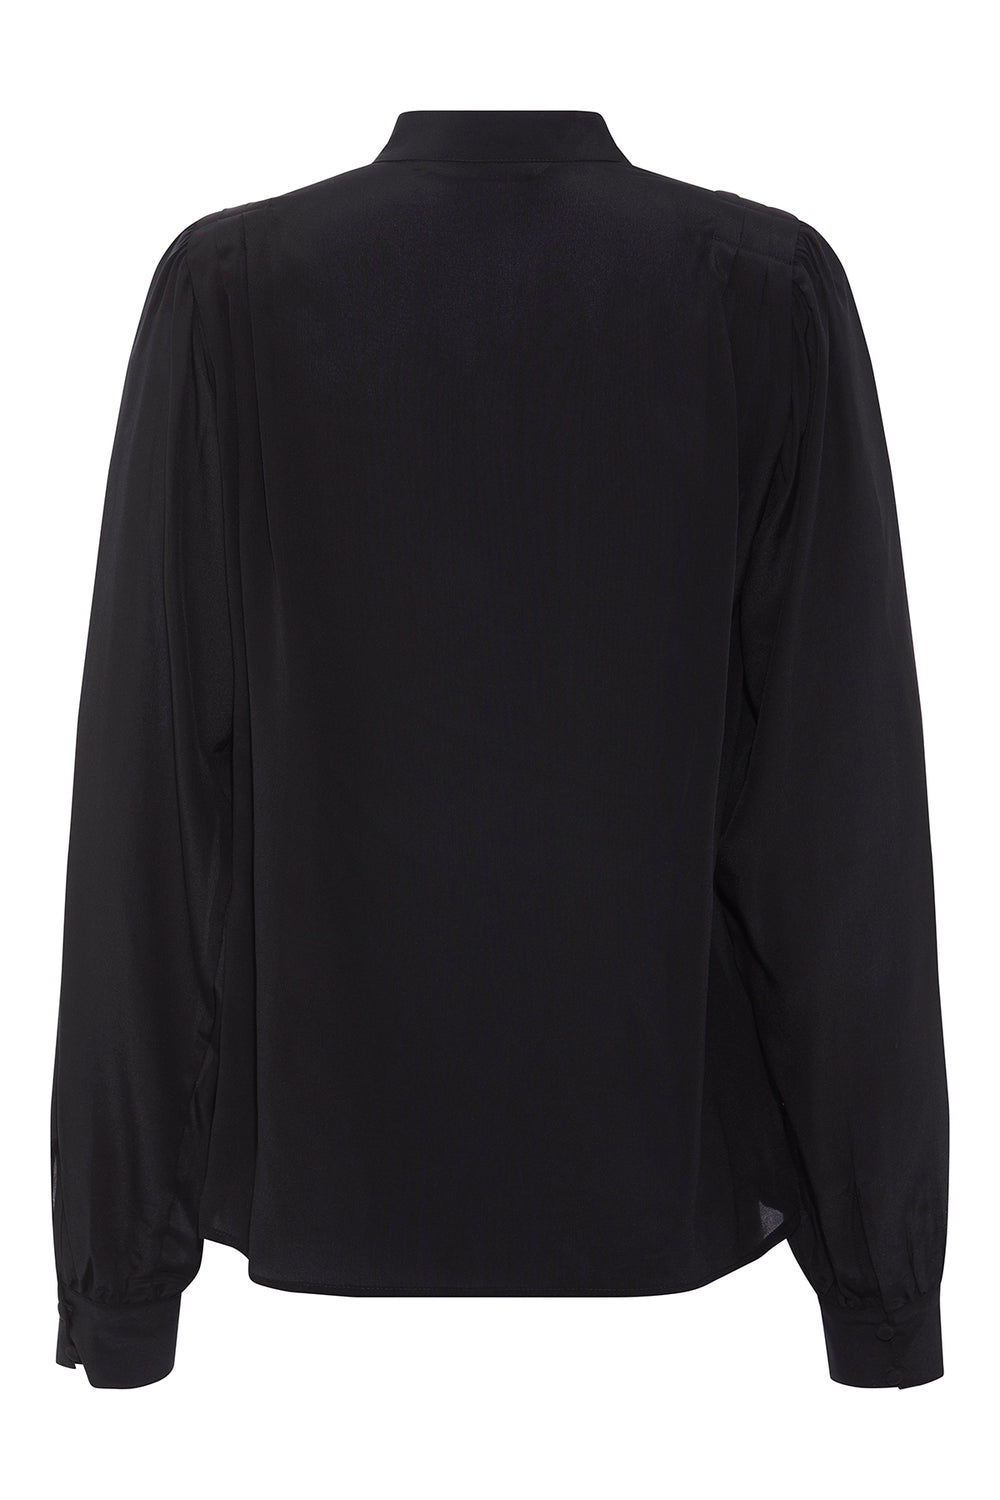 PBO Tiavo blouse BLOUSE 20 Black